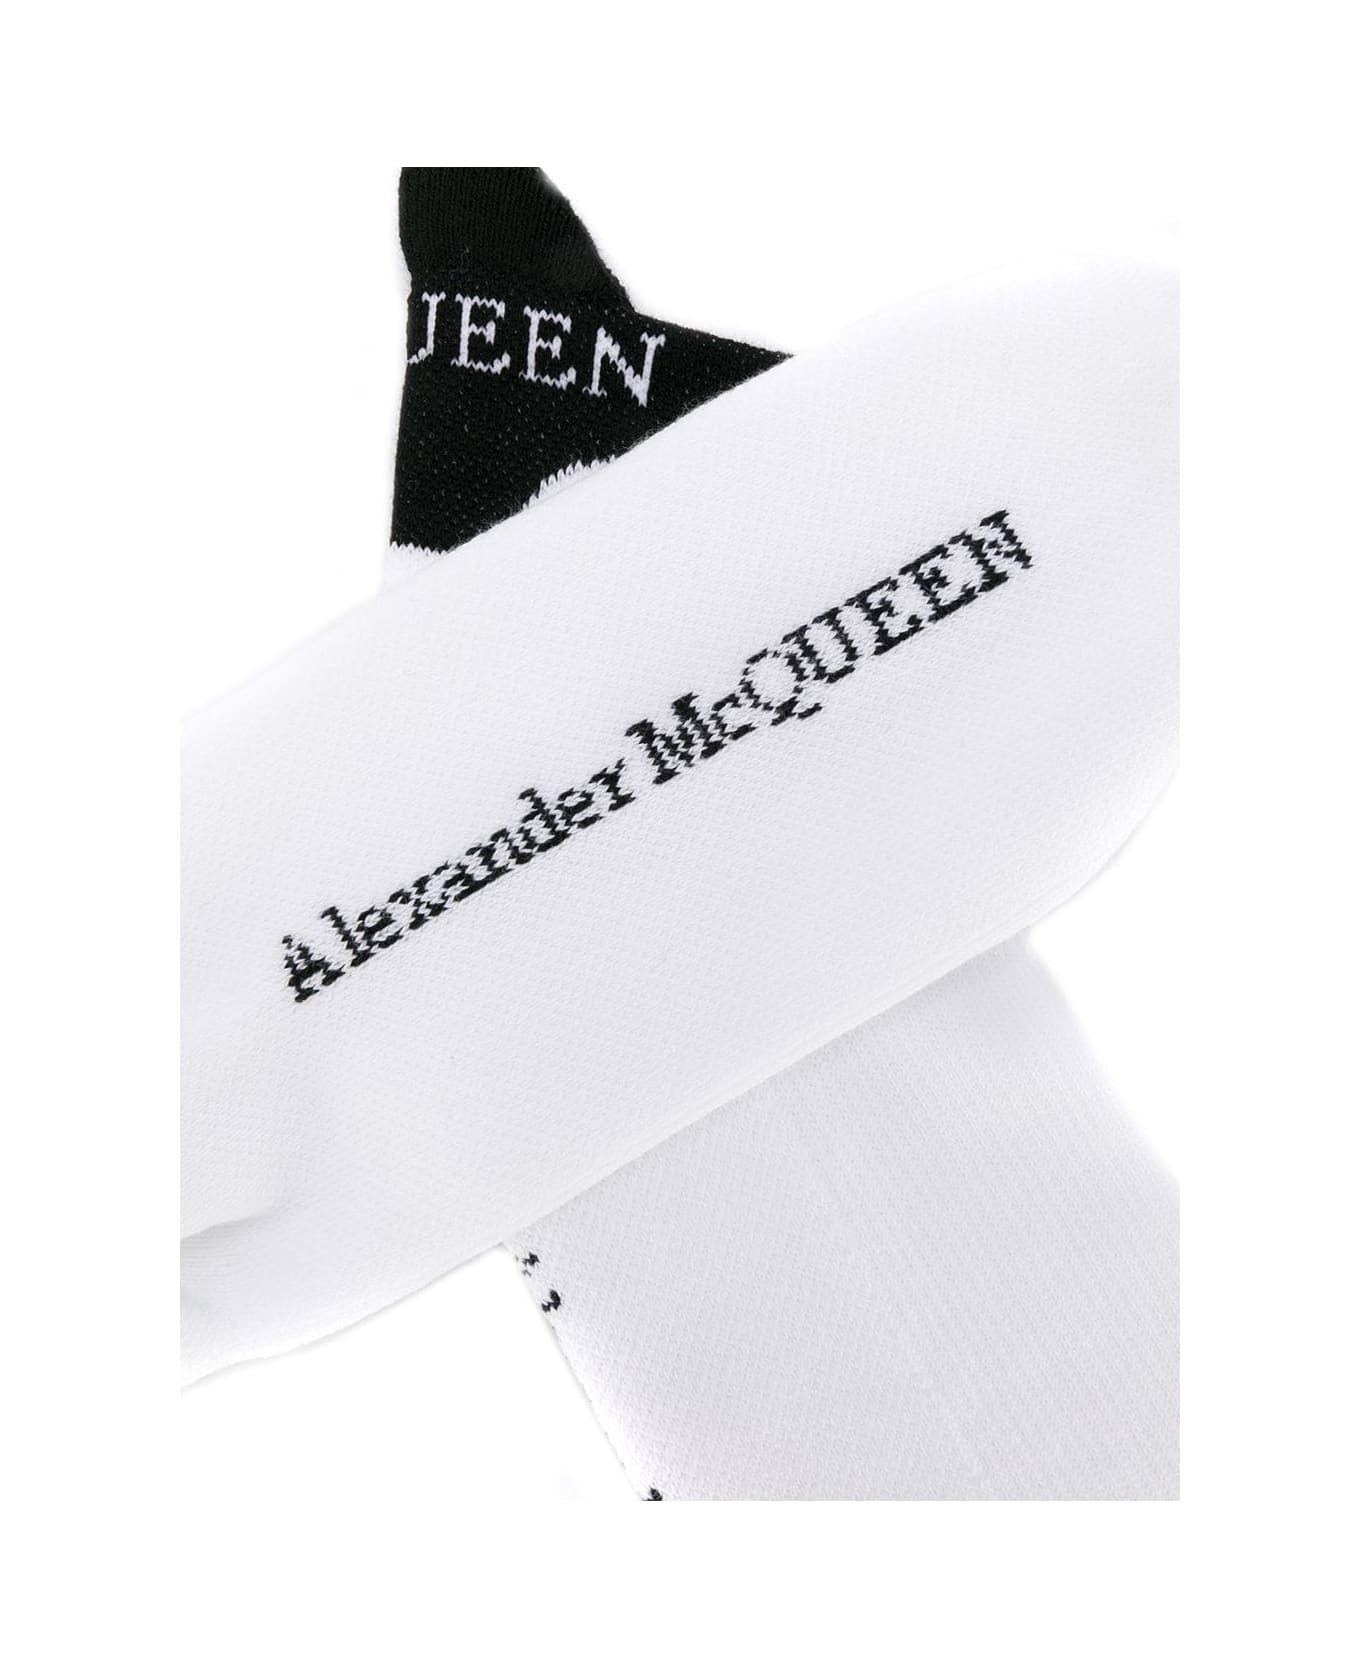 Alexander McQueen Socks Branding Mcque - White Black 靴下